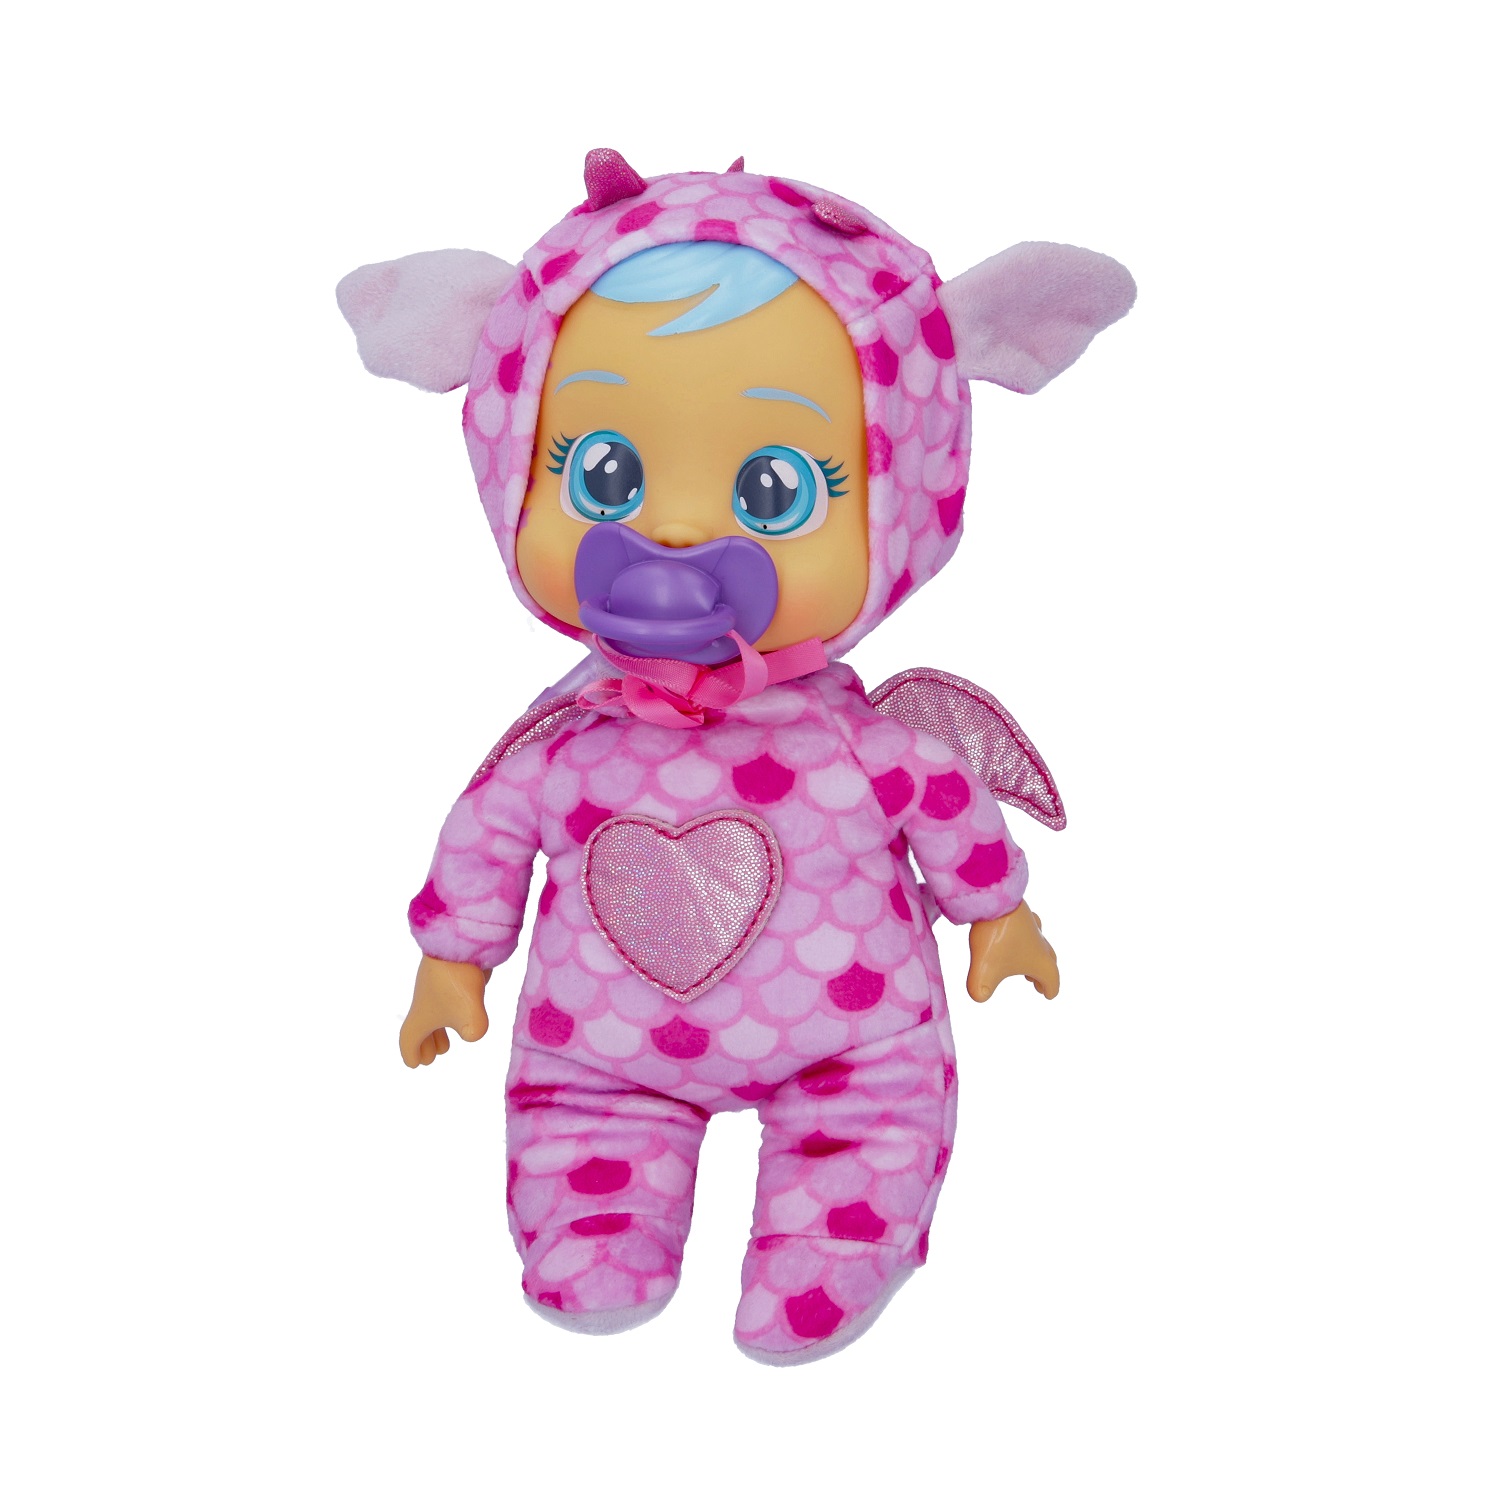 Кукла Cry Babies Край Бебис Бруни Малышка интерактивная плачущая 41039 кукла cry babies bff дотти 904378